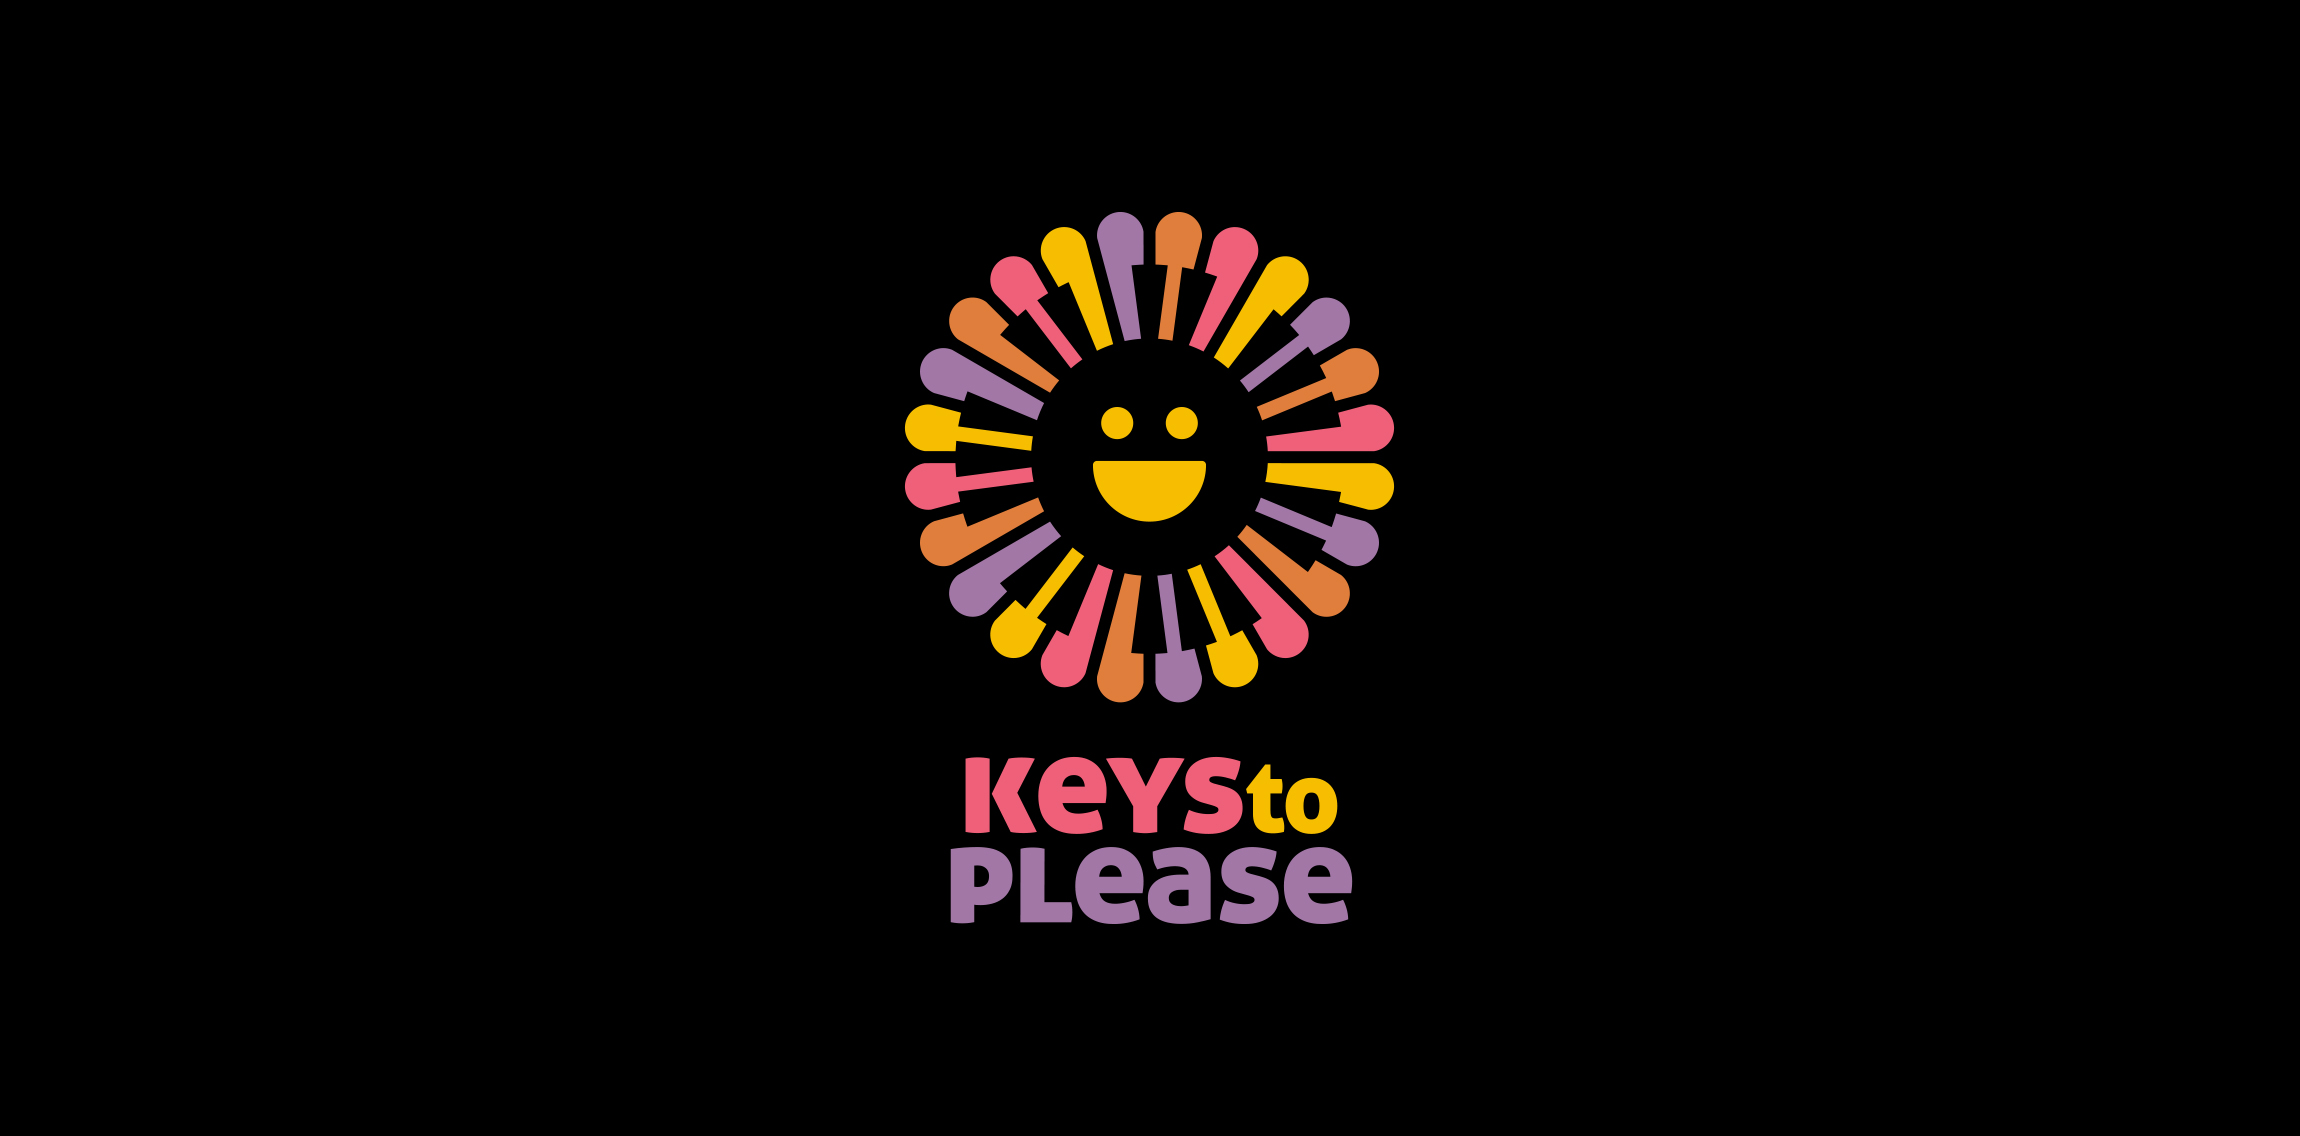 Keys to Please